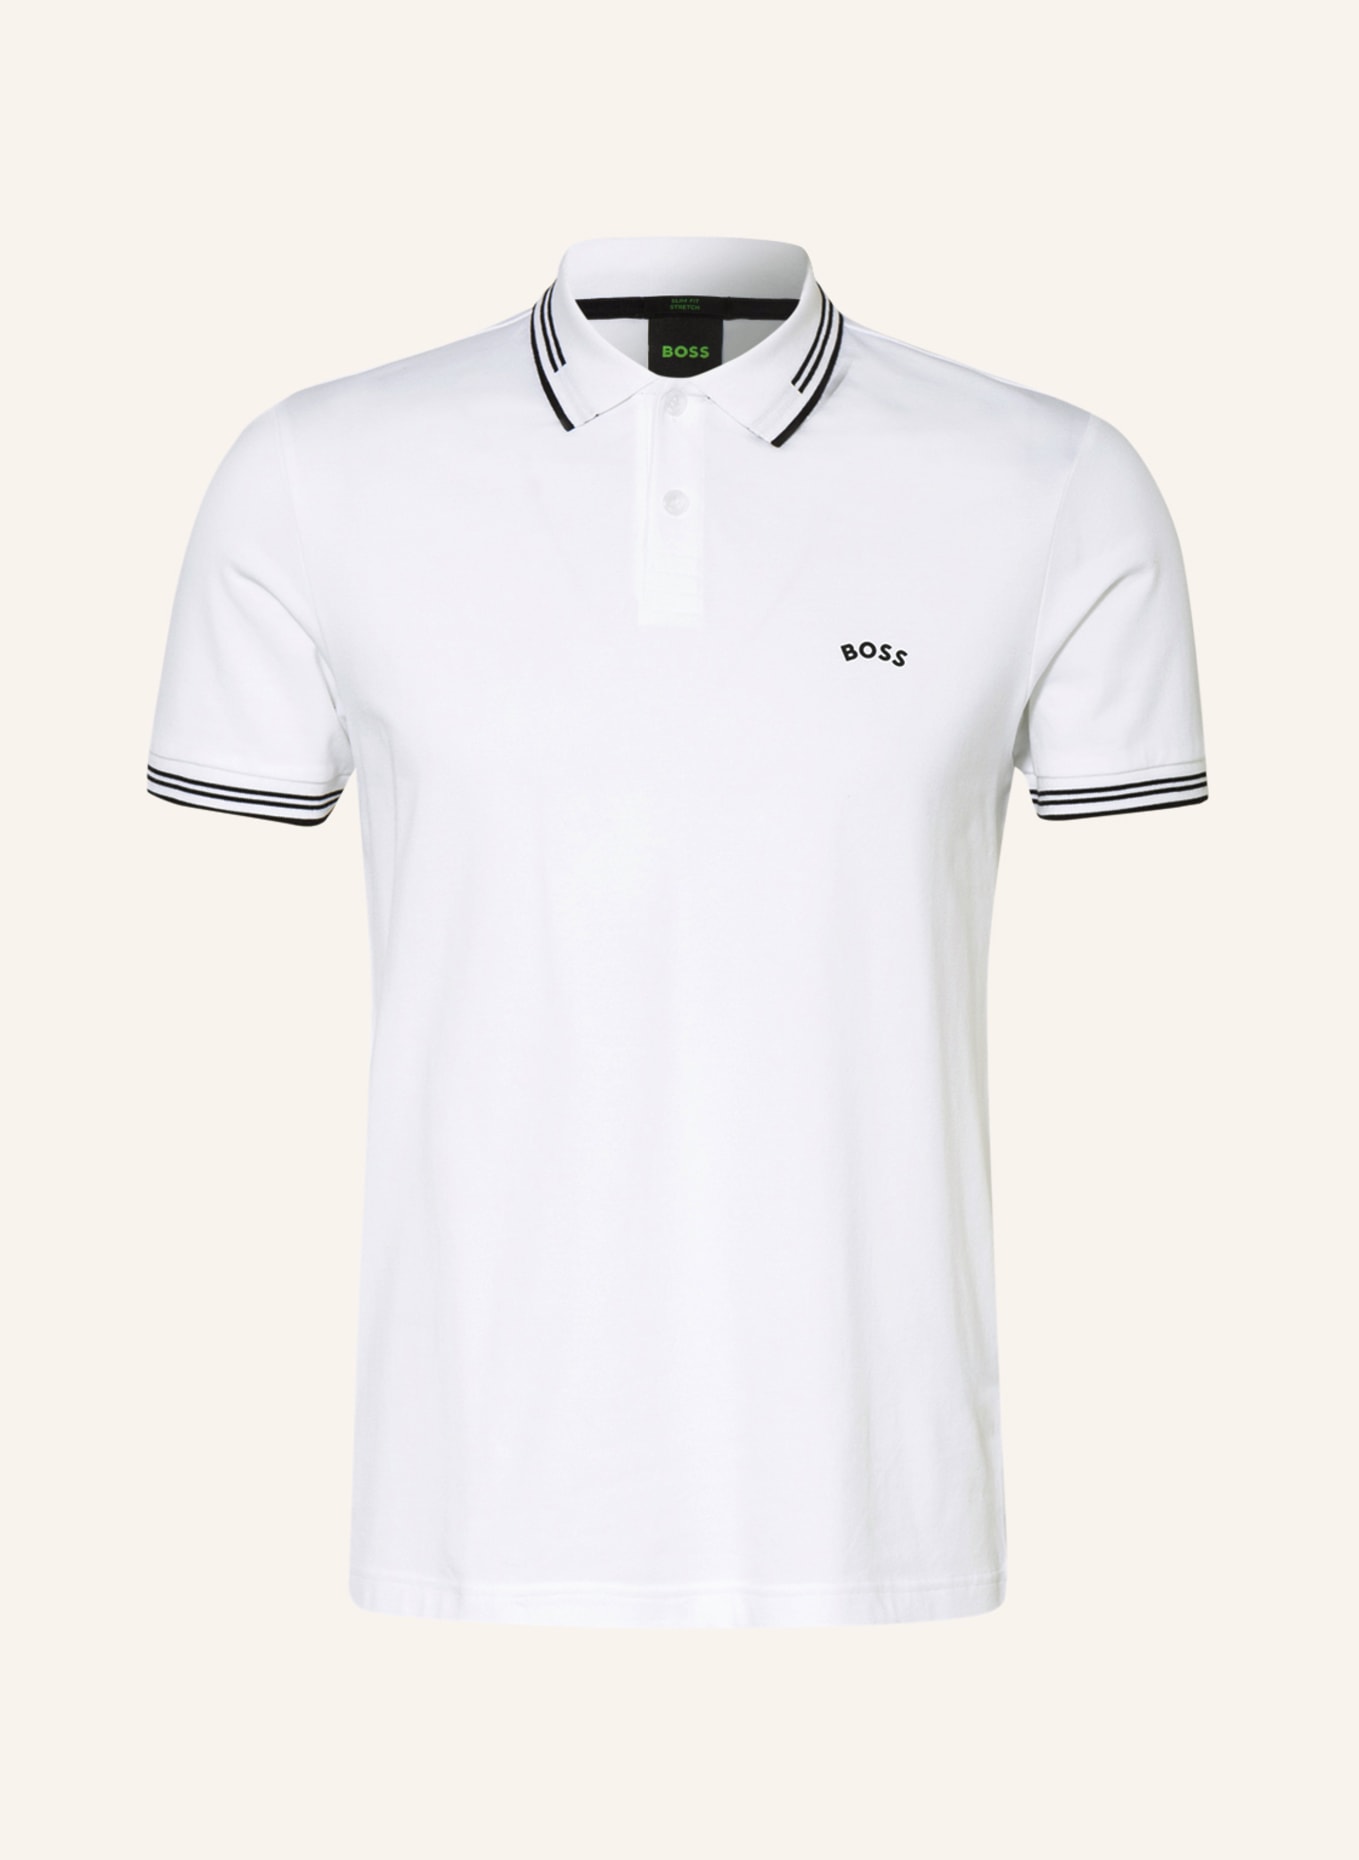 BOSS Piqué-Poloshirt PAUL Slim Fit, Farbe: WEISS/ SCHWARZ (Bild 1)